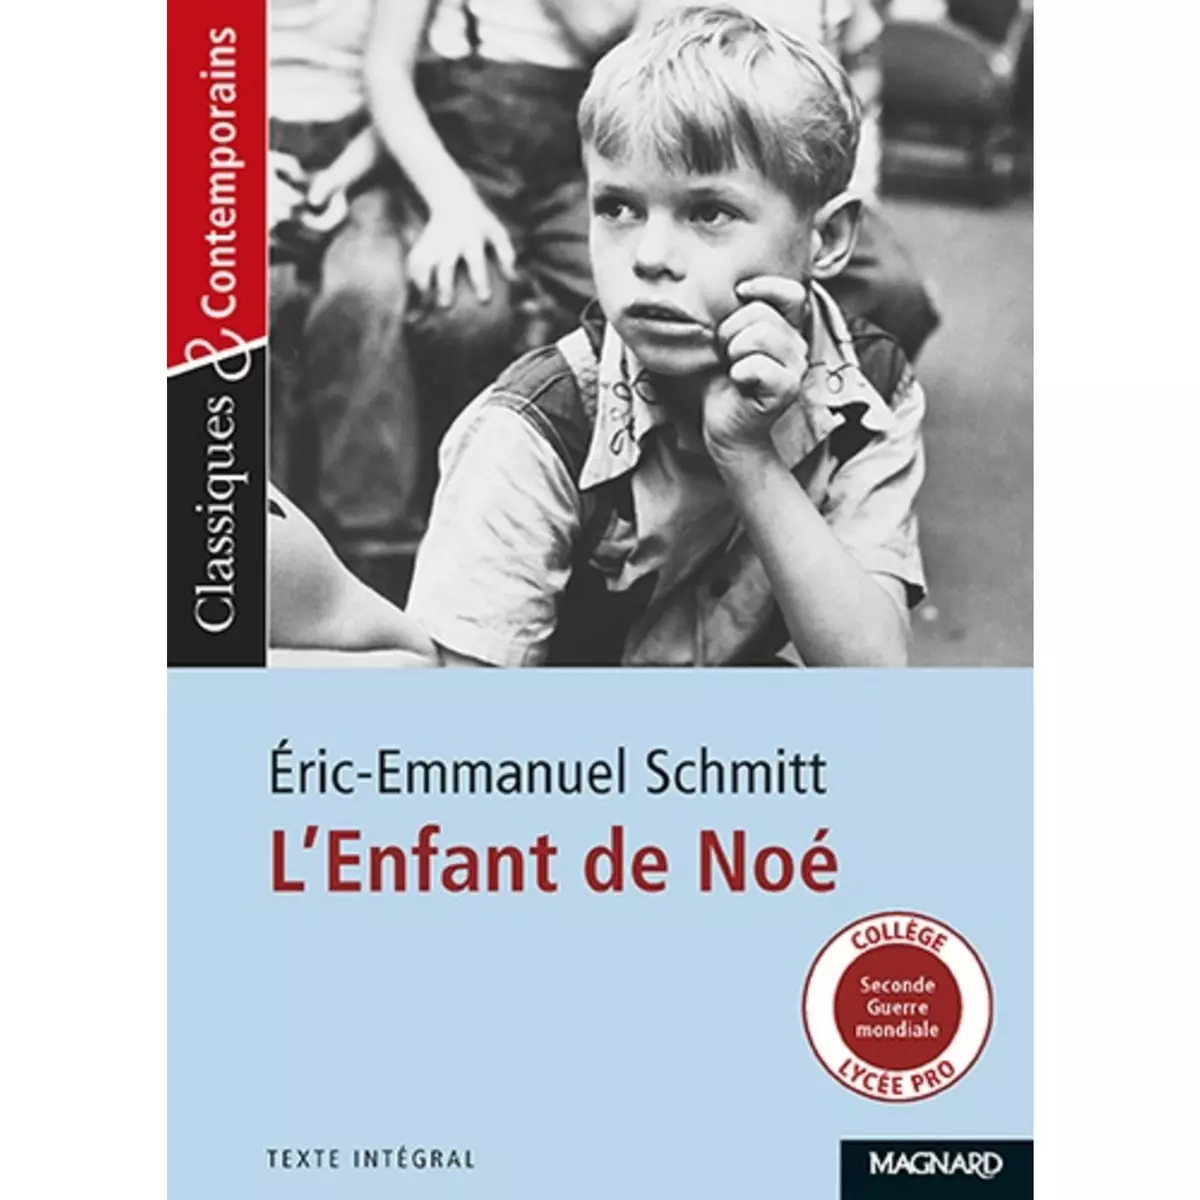  L'ENFANT DE NOE, Schmitt Eric-Emmanuel